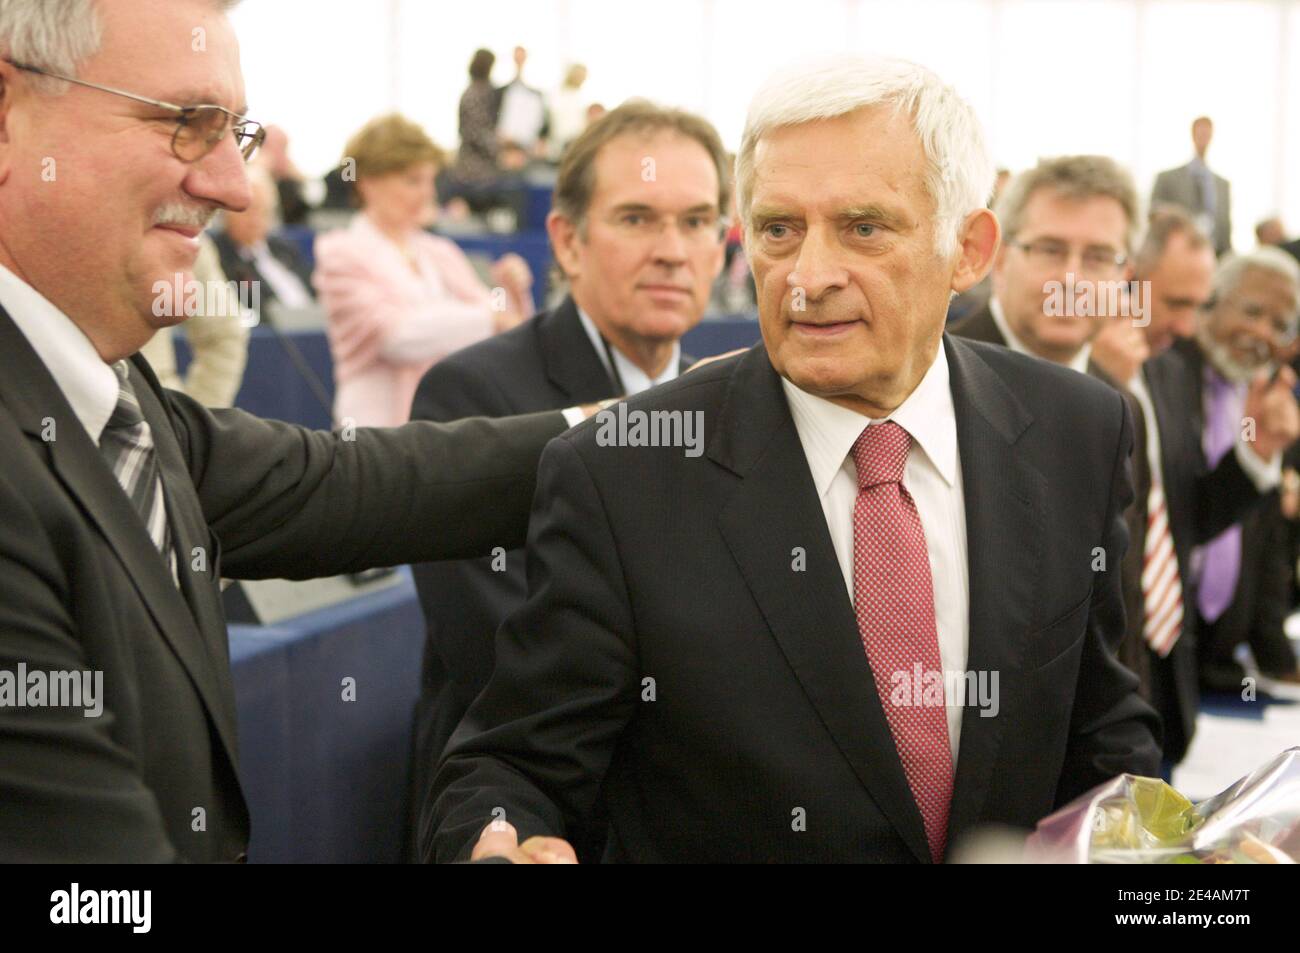 Il Presidente del Parlaiment europeo Jerzy Buzek viene raffigurato il 14 luglio 2009 durante la sessione di apertura al Parlamento europeo a Strasburgo, Francia orientale. Foto di Antoine/ABACAPRESS.COM Foto Stock